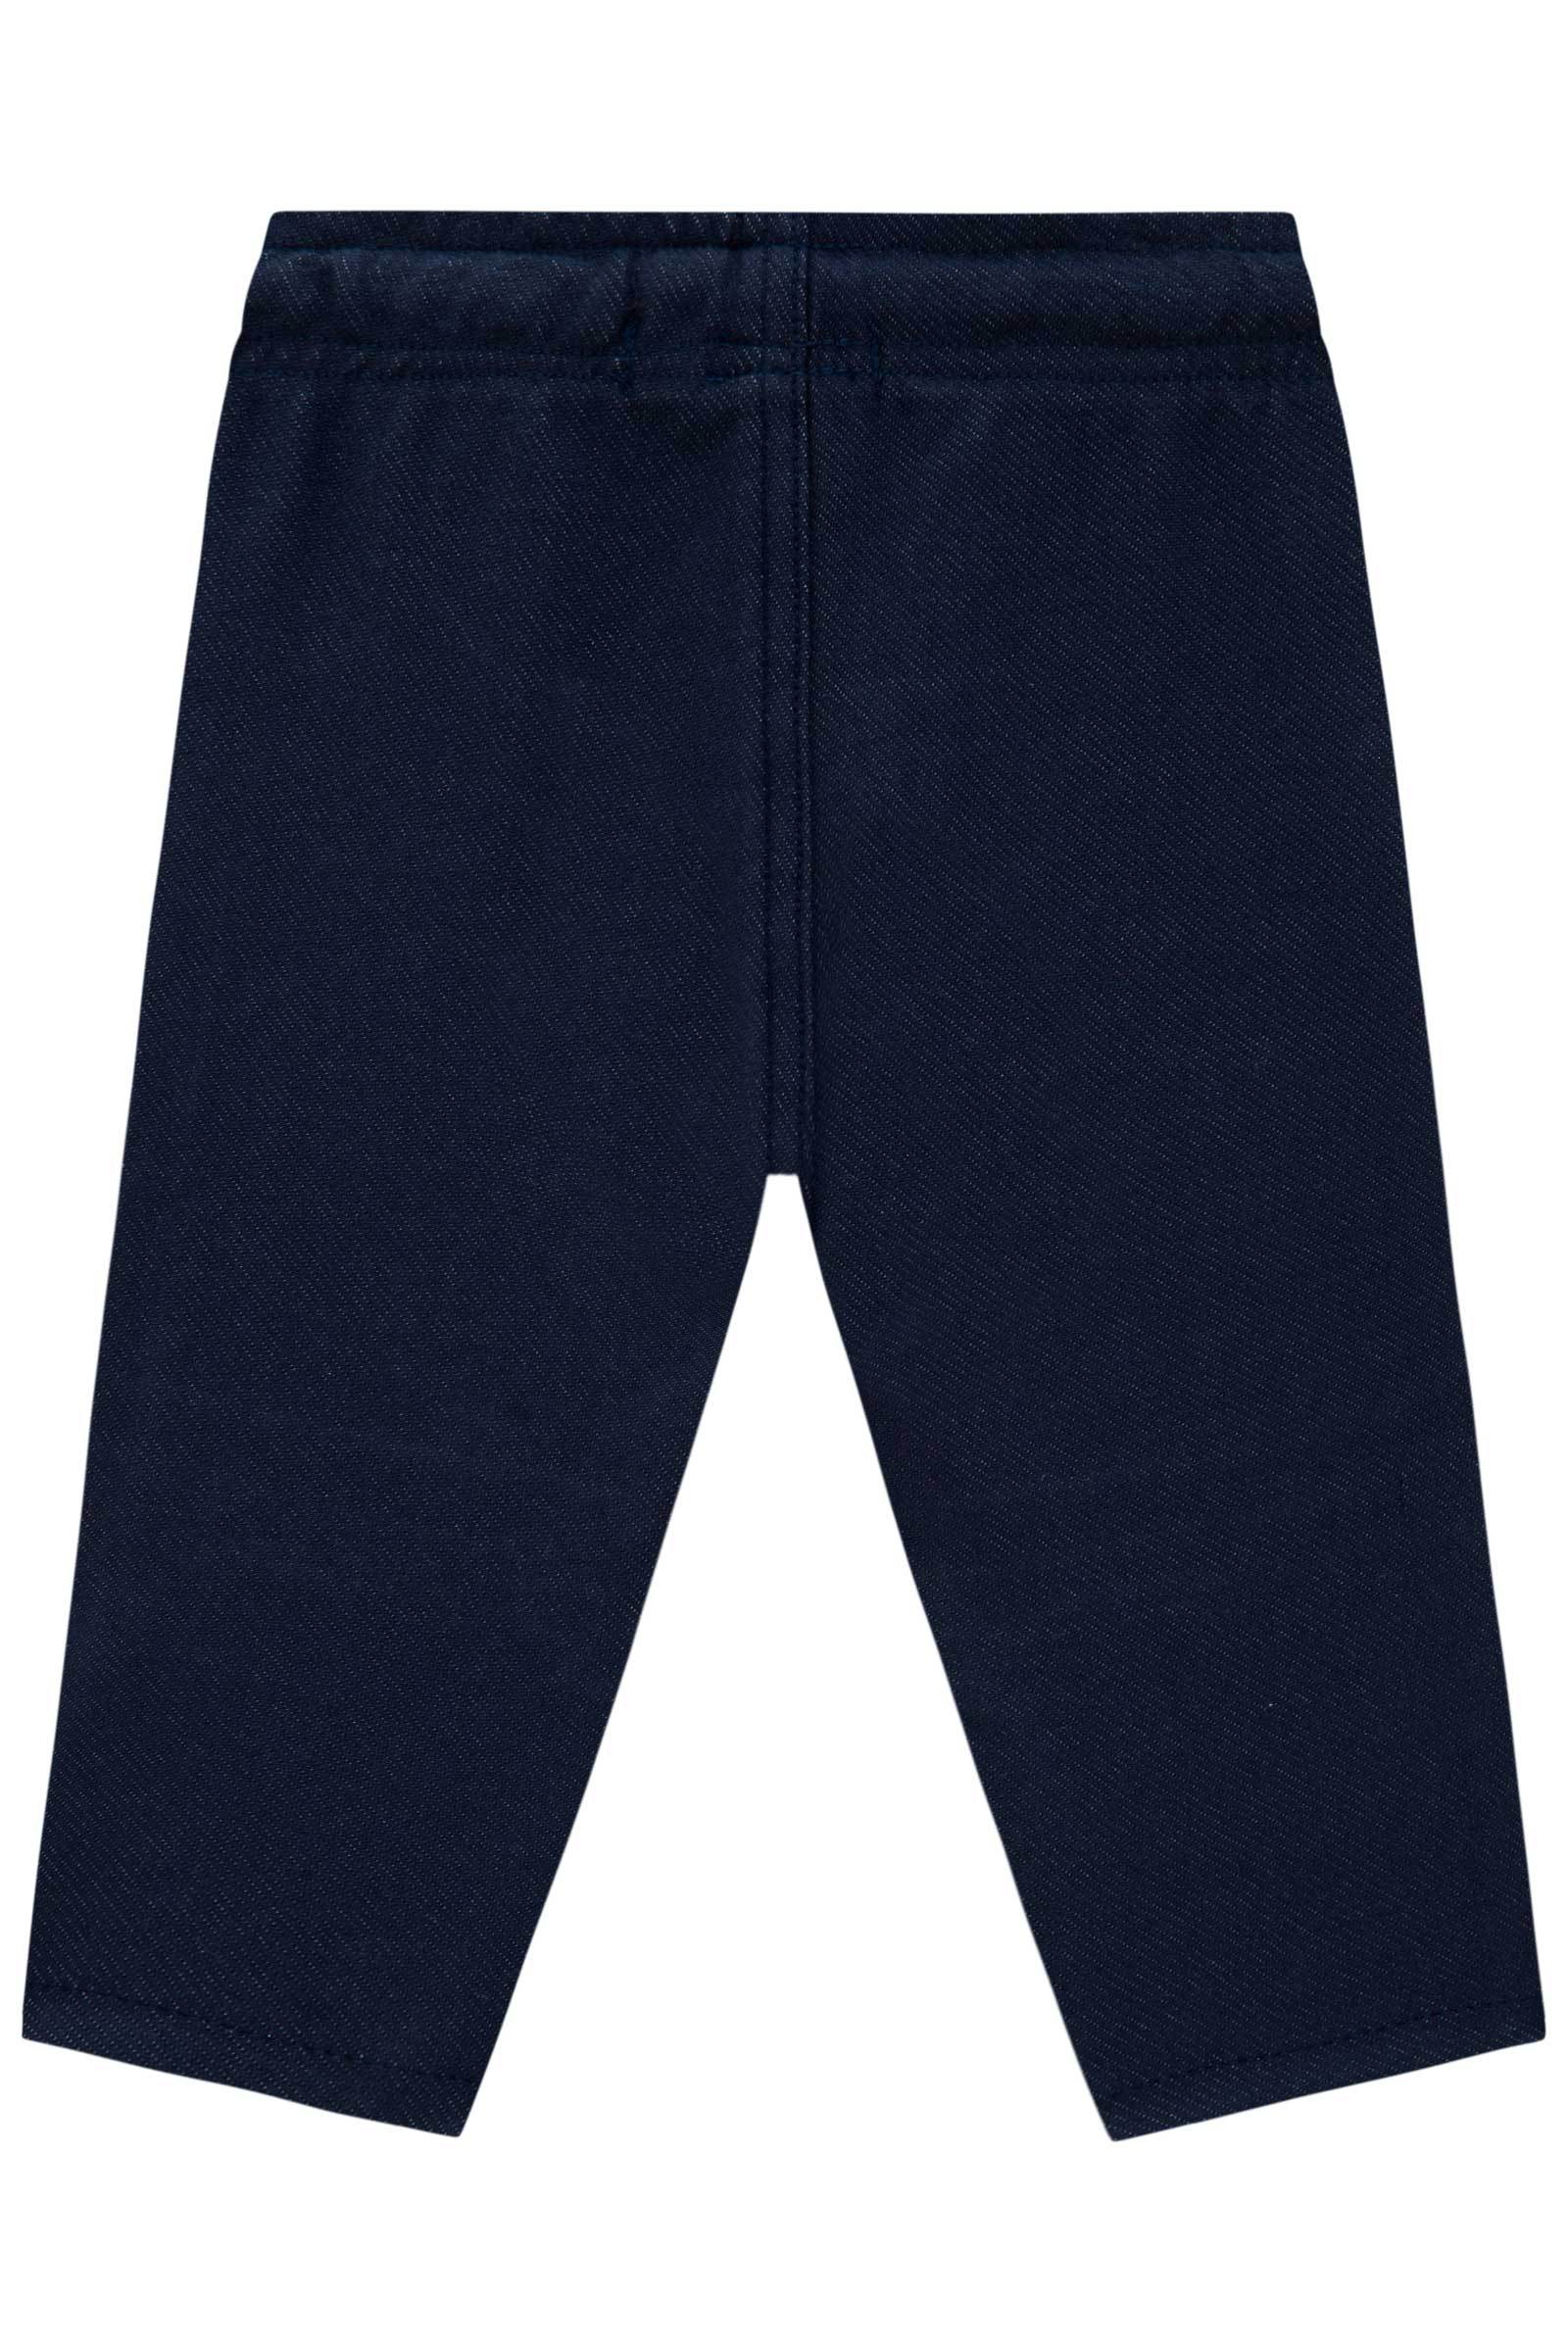 Calça Skinny Comfy em Cotton Jeans com Elastano 71069 Johnny Fox